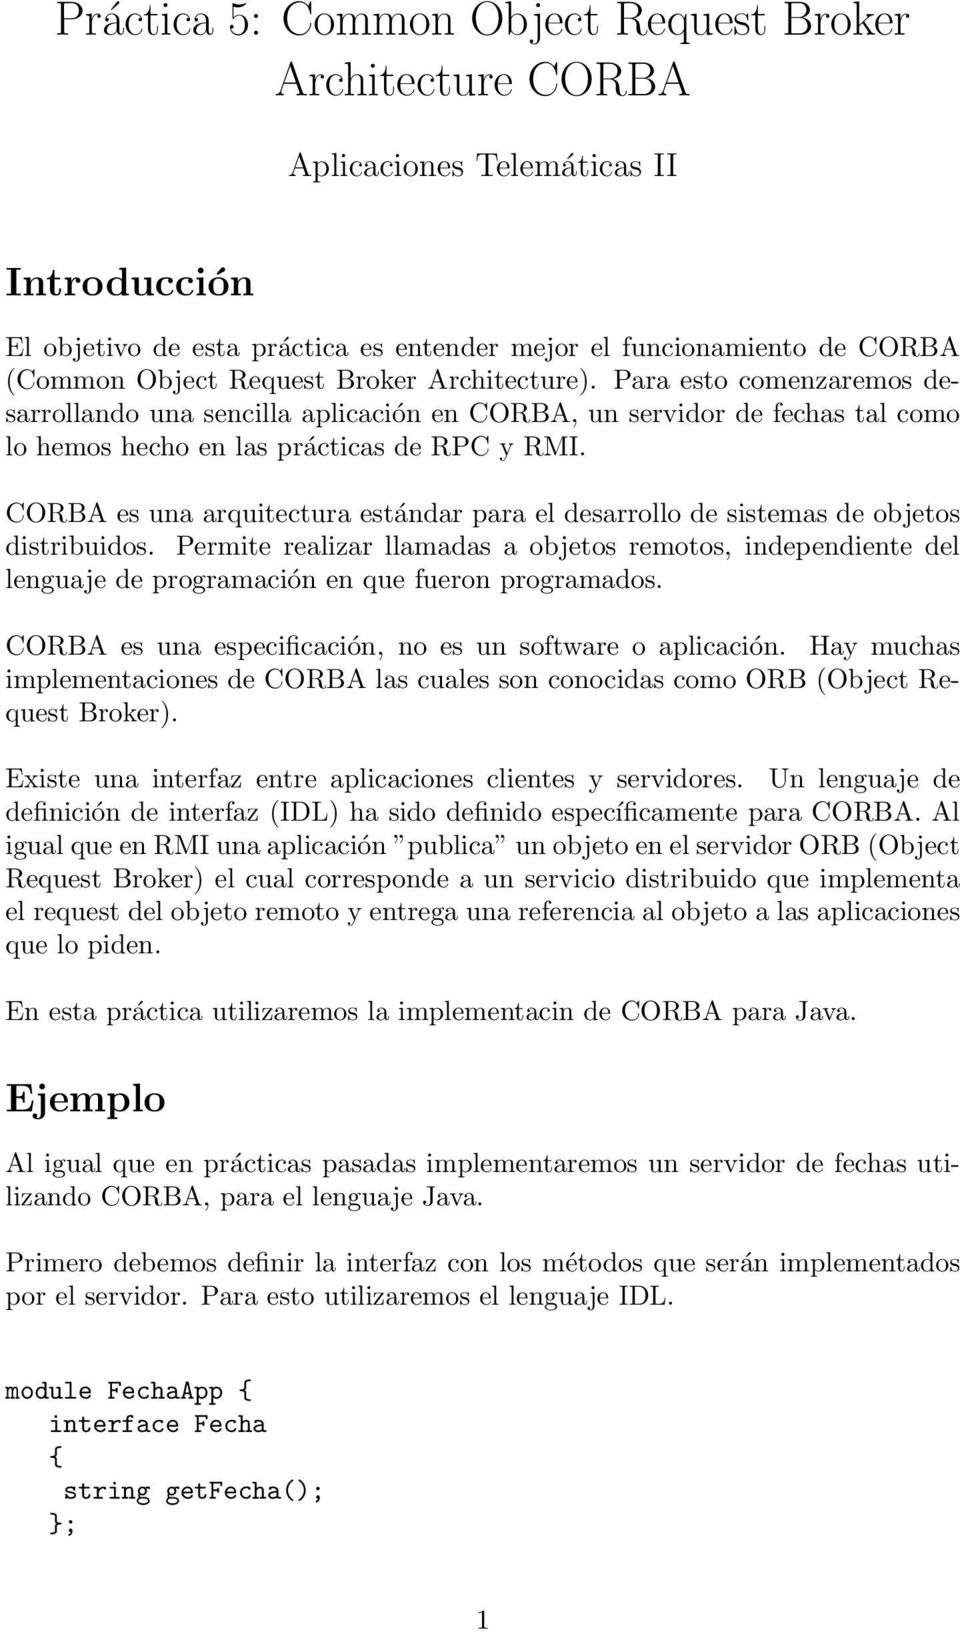 CORBA es una arquitectura estándar para el desarrollo de sistemas de objetos distribuidos.